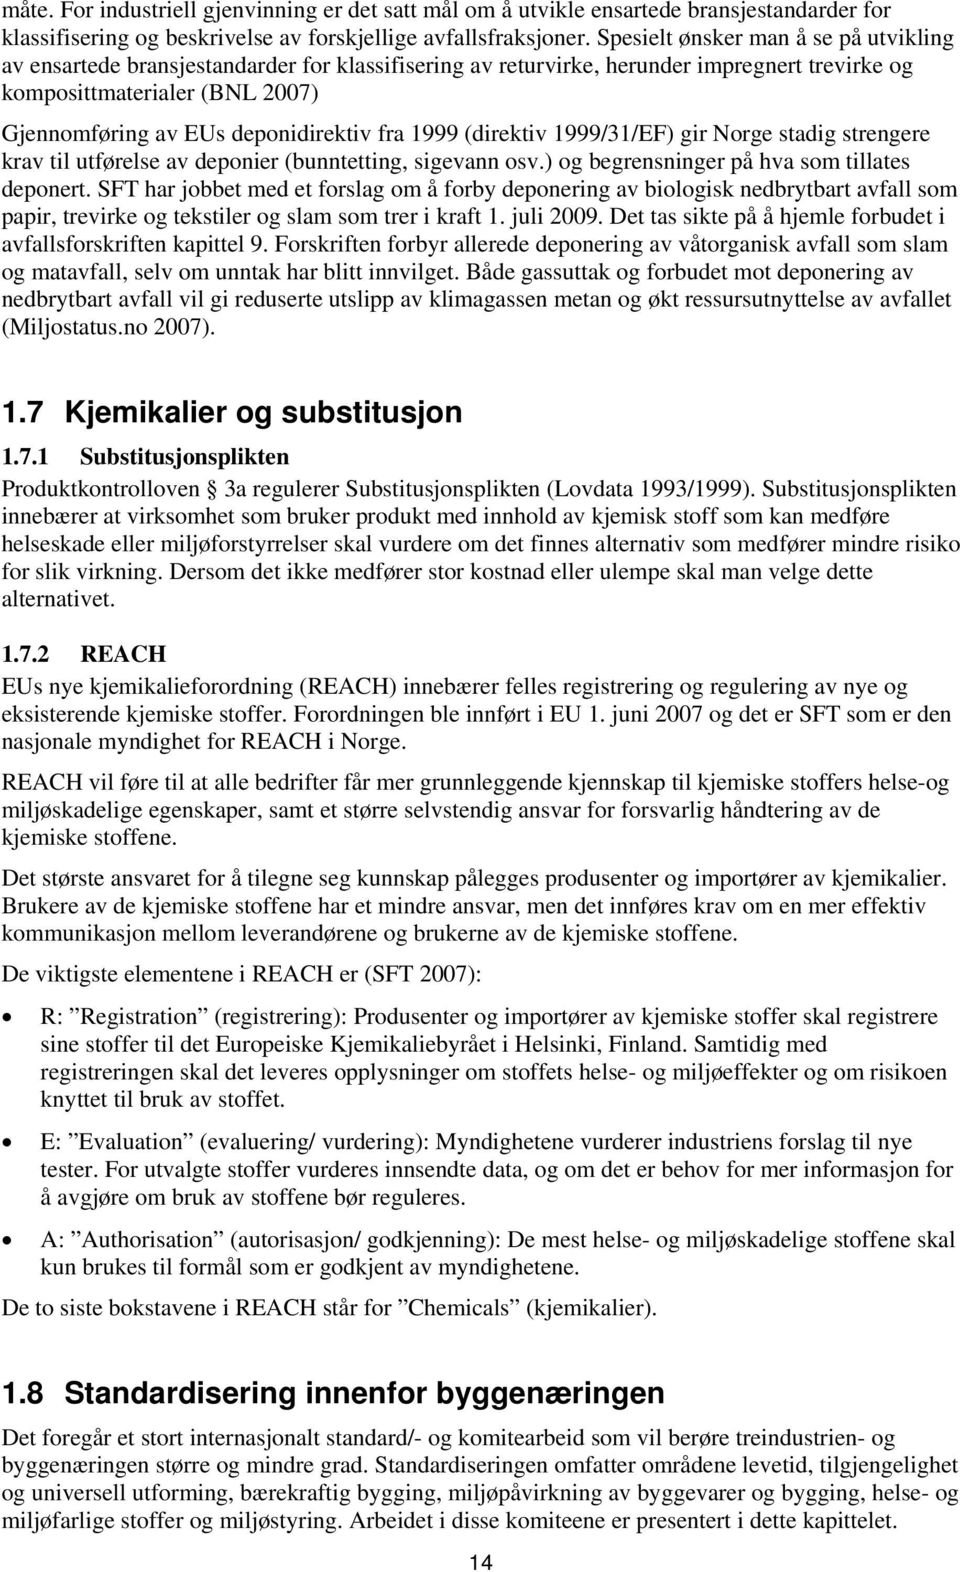 deponidirektiv fra 1999 (direktiv 1999/31/EF) gir Norge stadig strengere krav til utførelse av deponier (bunntetting, sigevann osv.) og begrensninger på hva som tillates deponert.